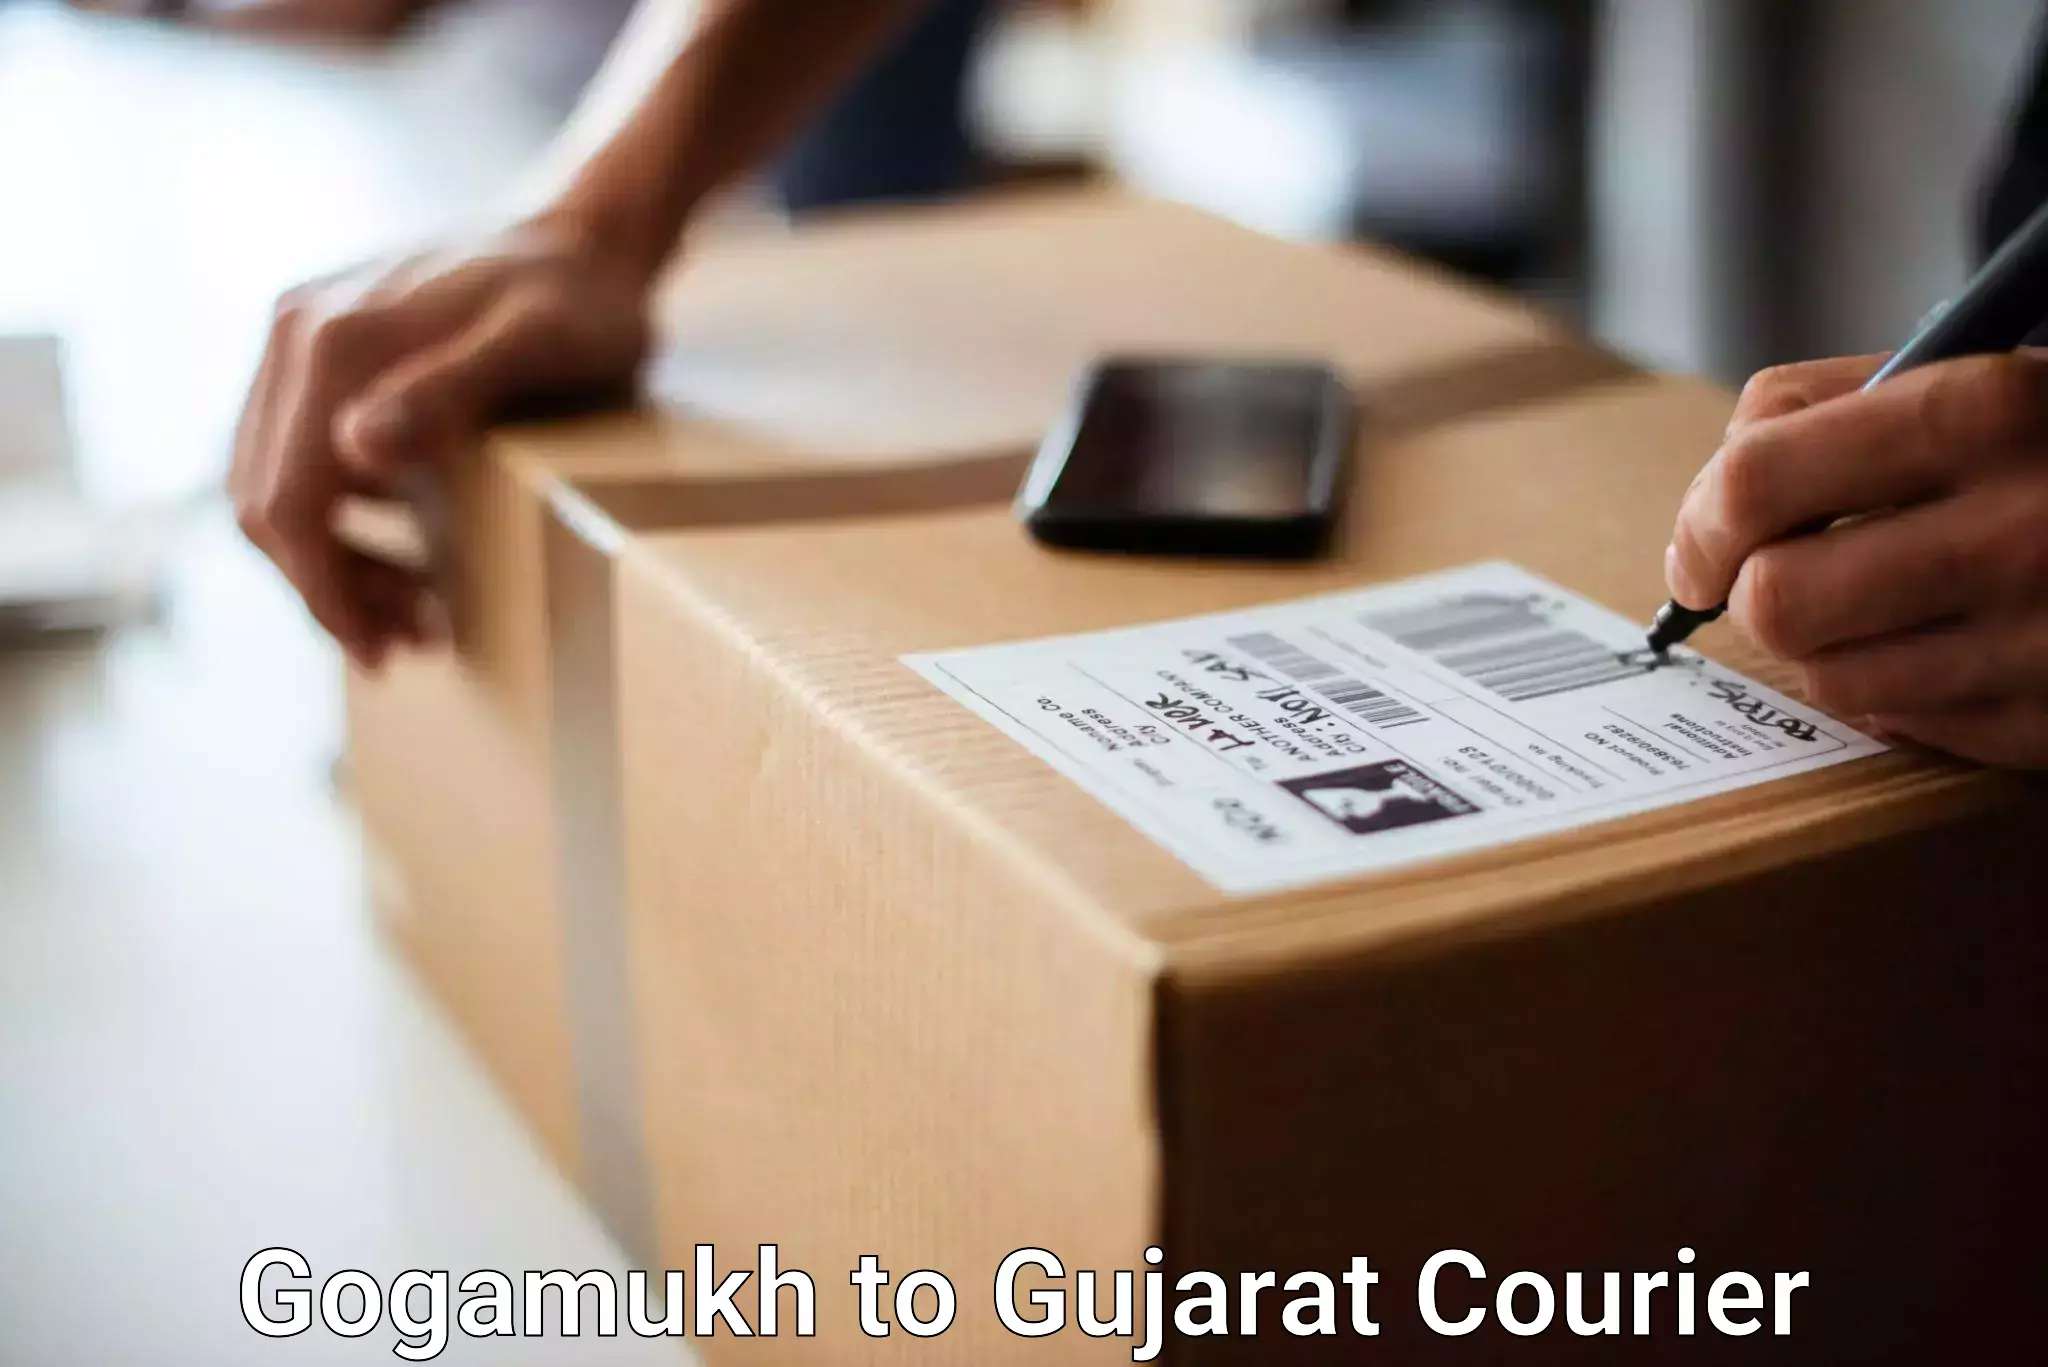 Luggage forwarding service Gogamukh to Mundra